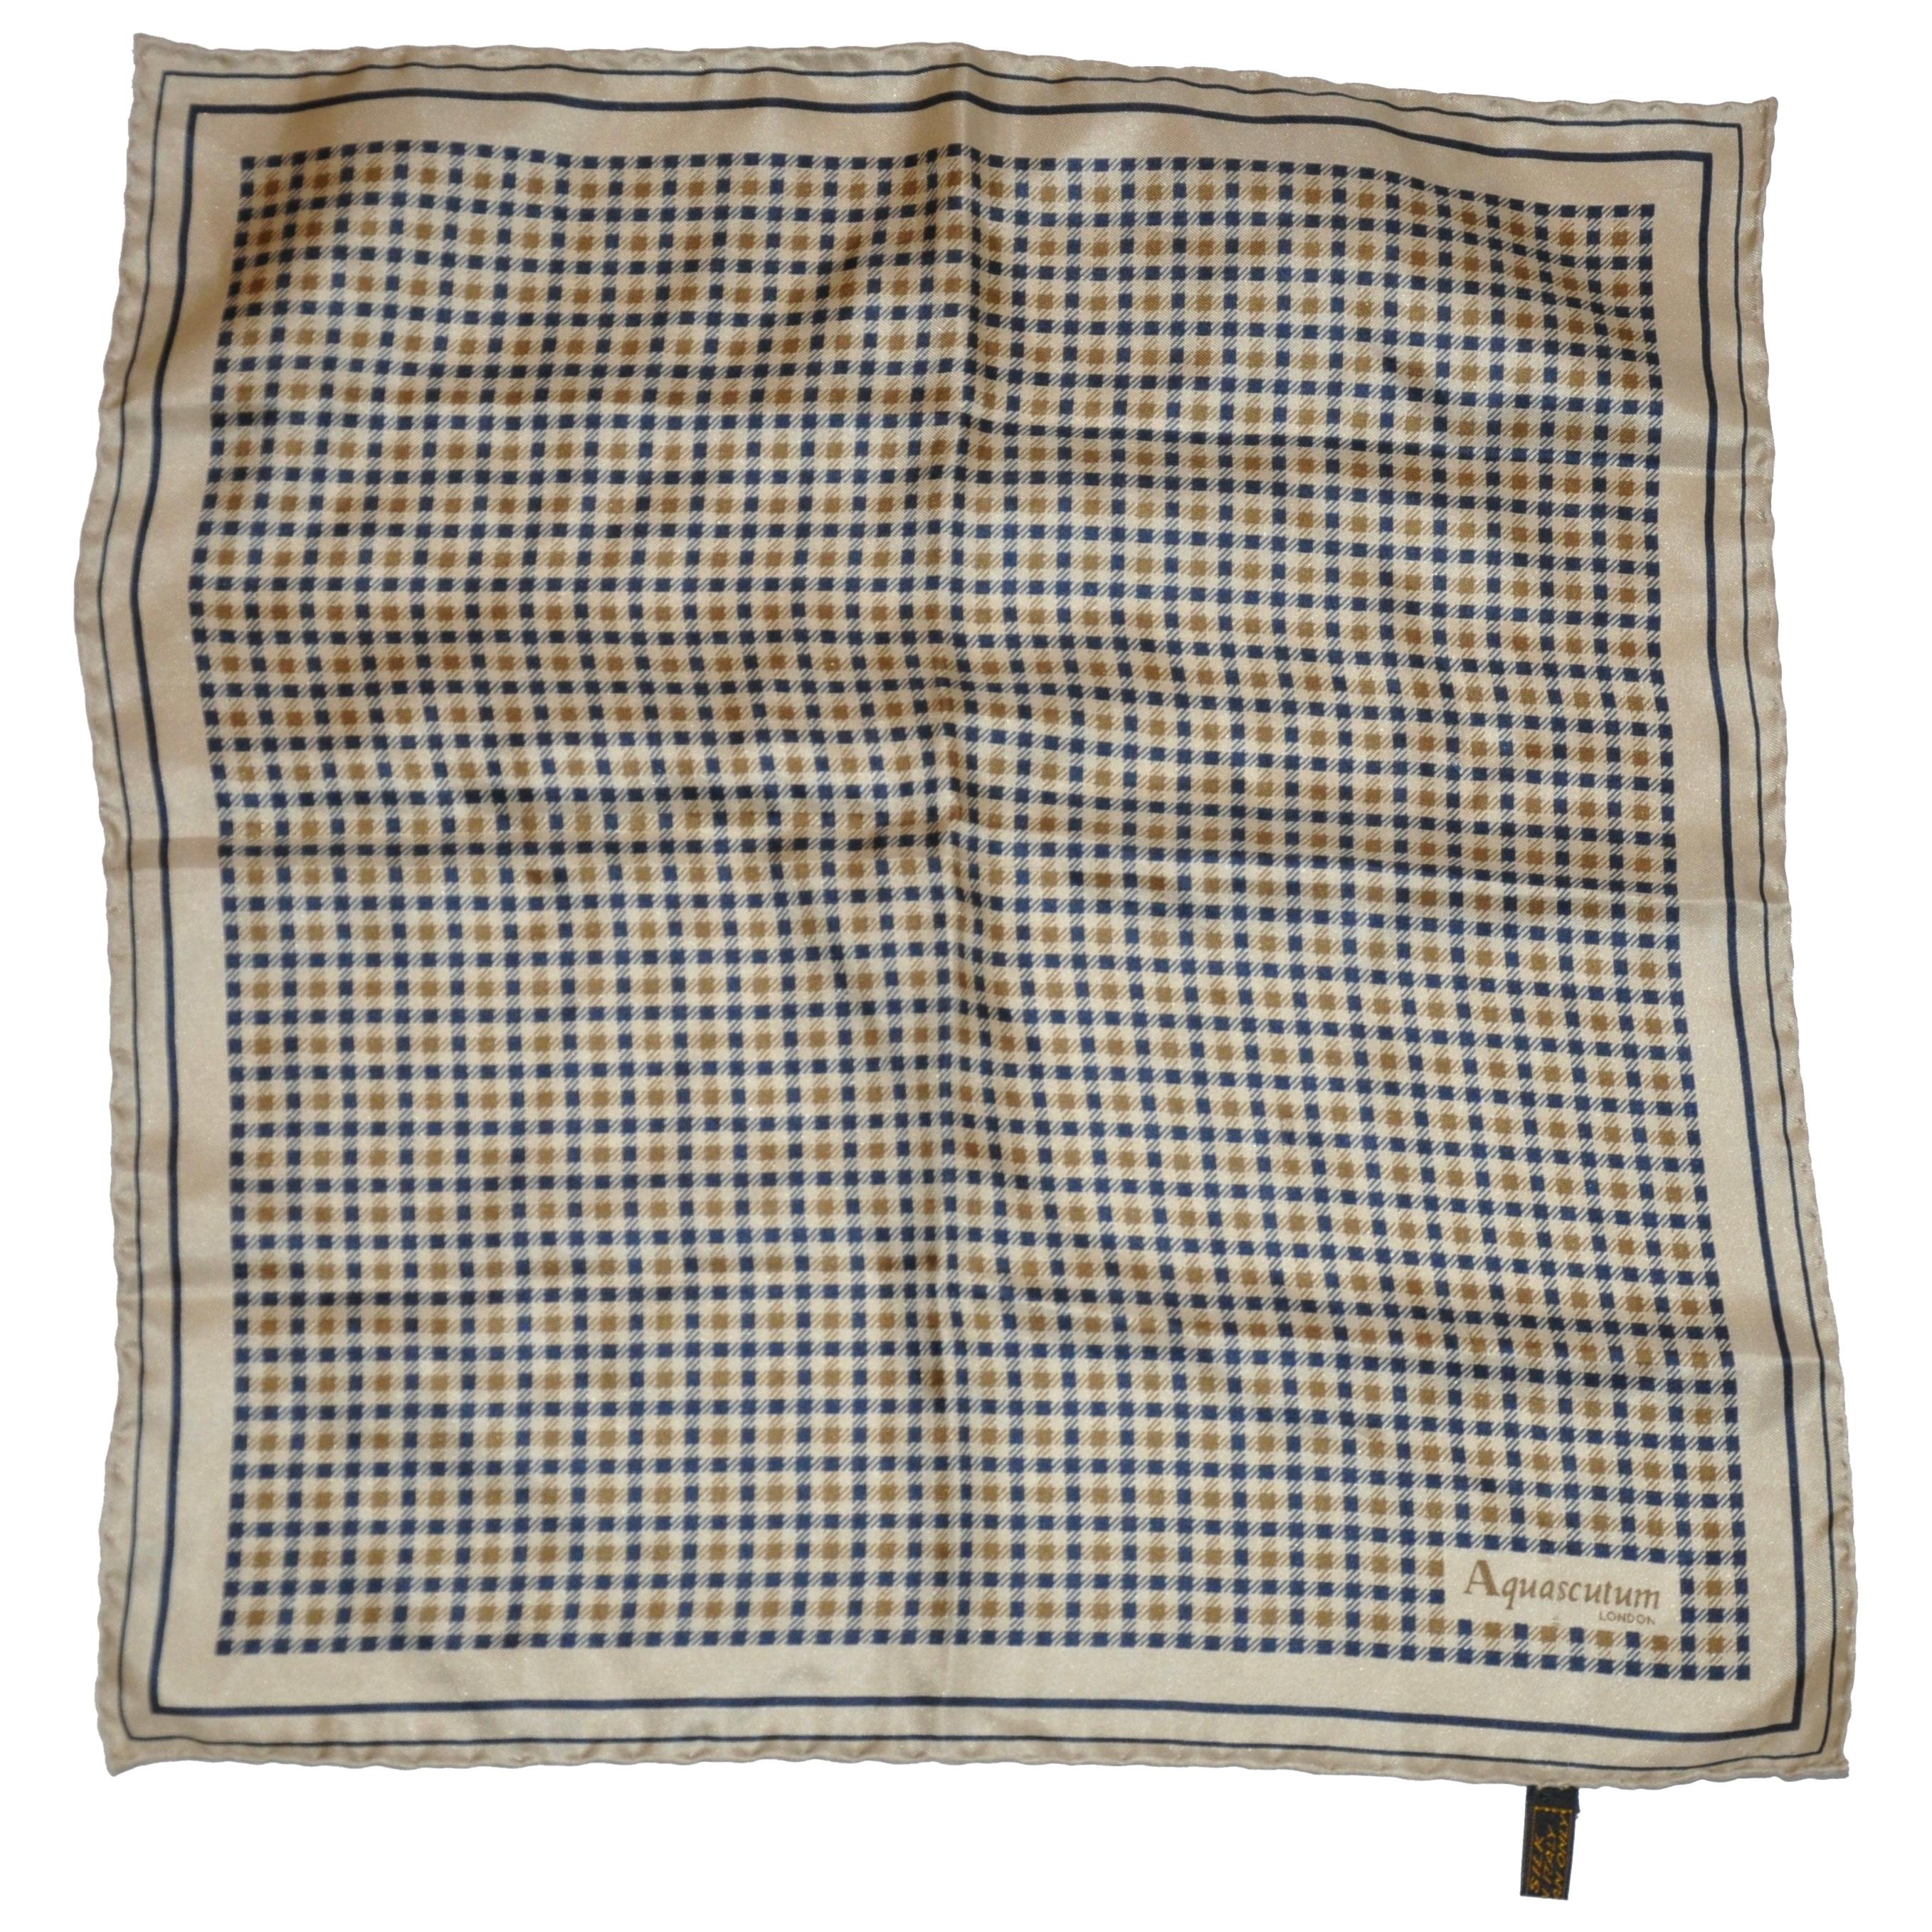 Aquascutum Iconic Men's Silk Handkerchief For Sale